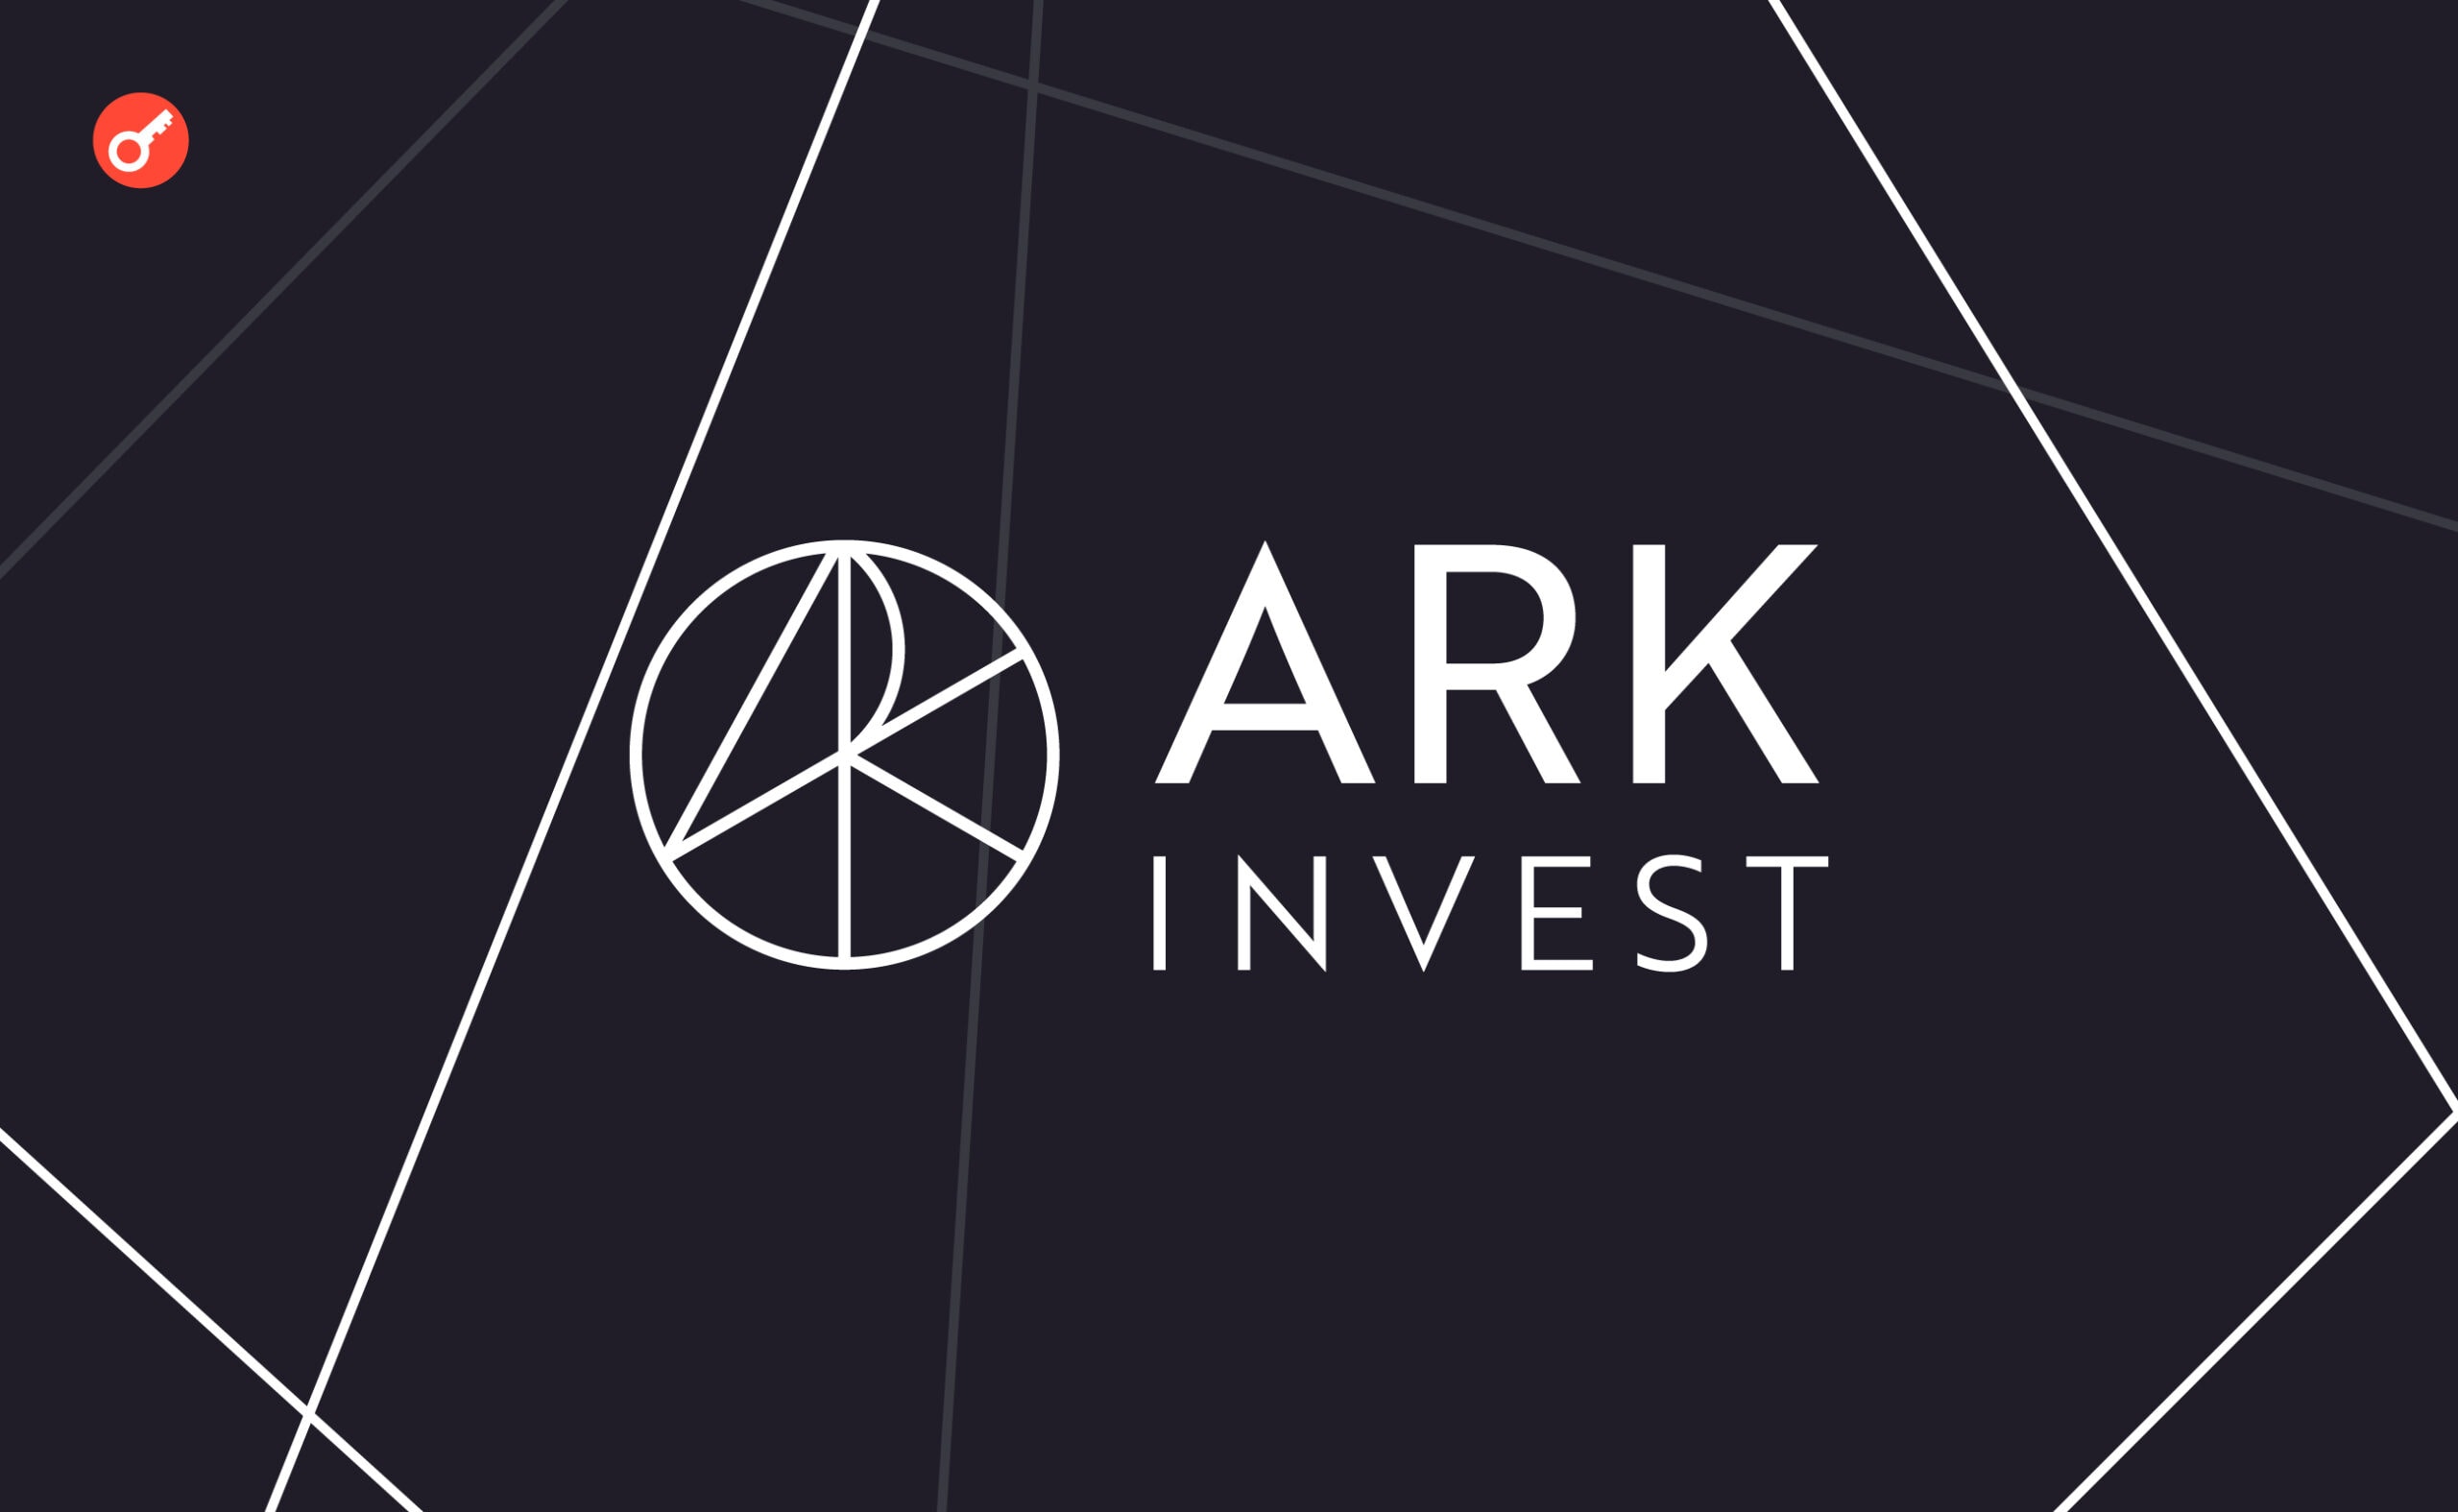 Ark Invest внесли поправки в заявку на ETF, чтобы обойти конкурентов. Заглавный коллаж новости.